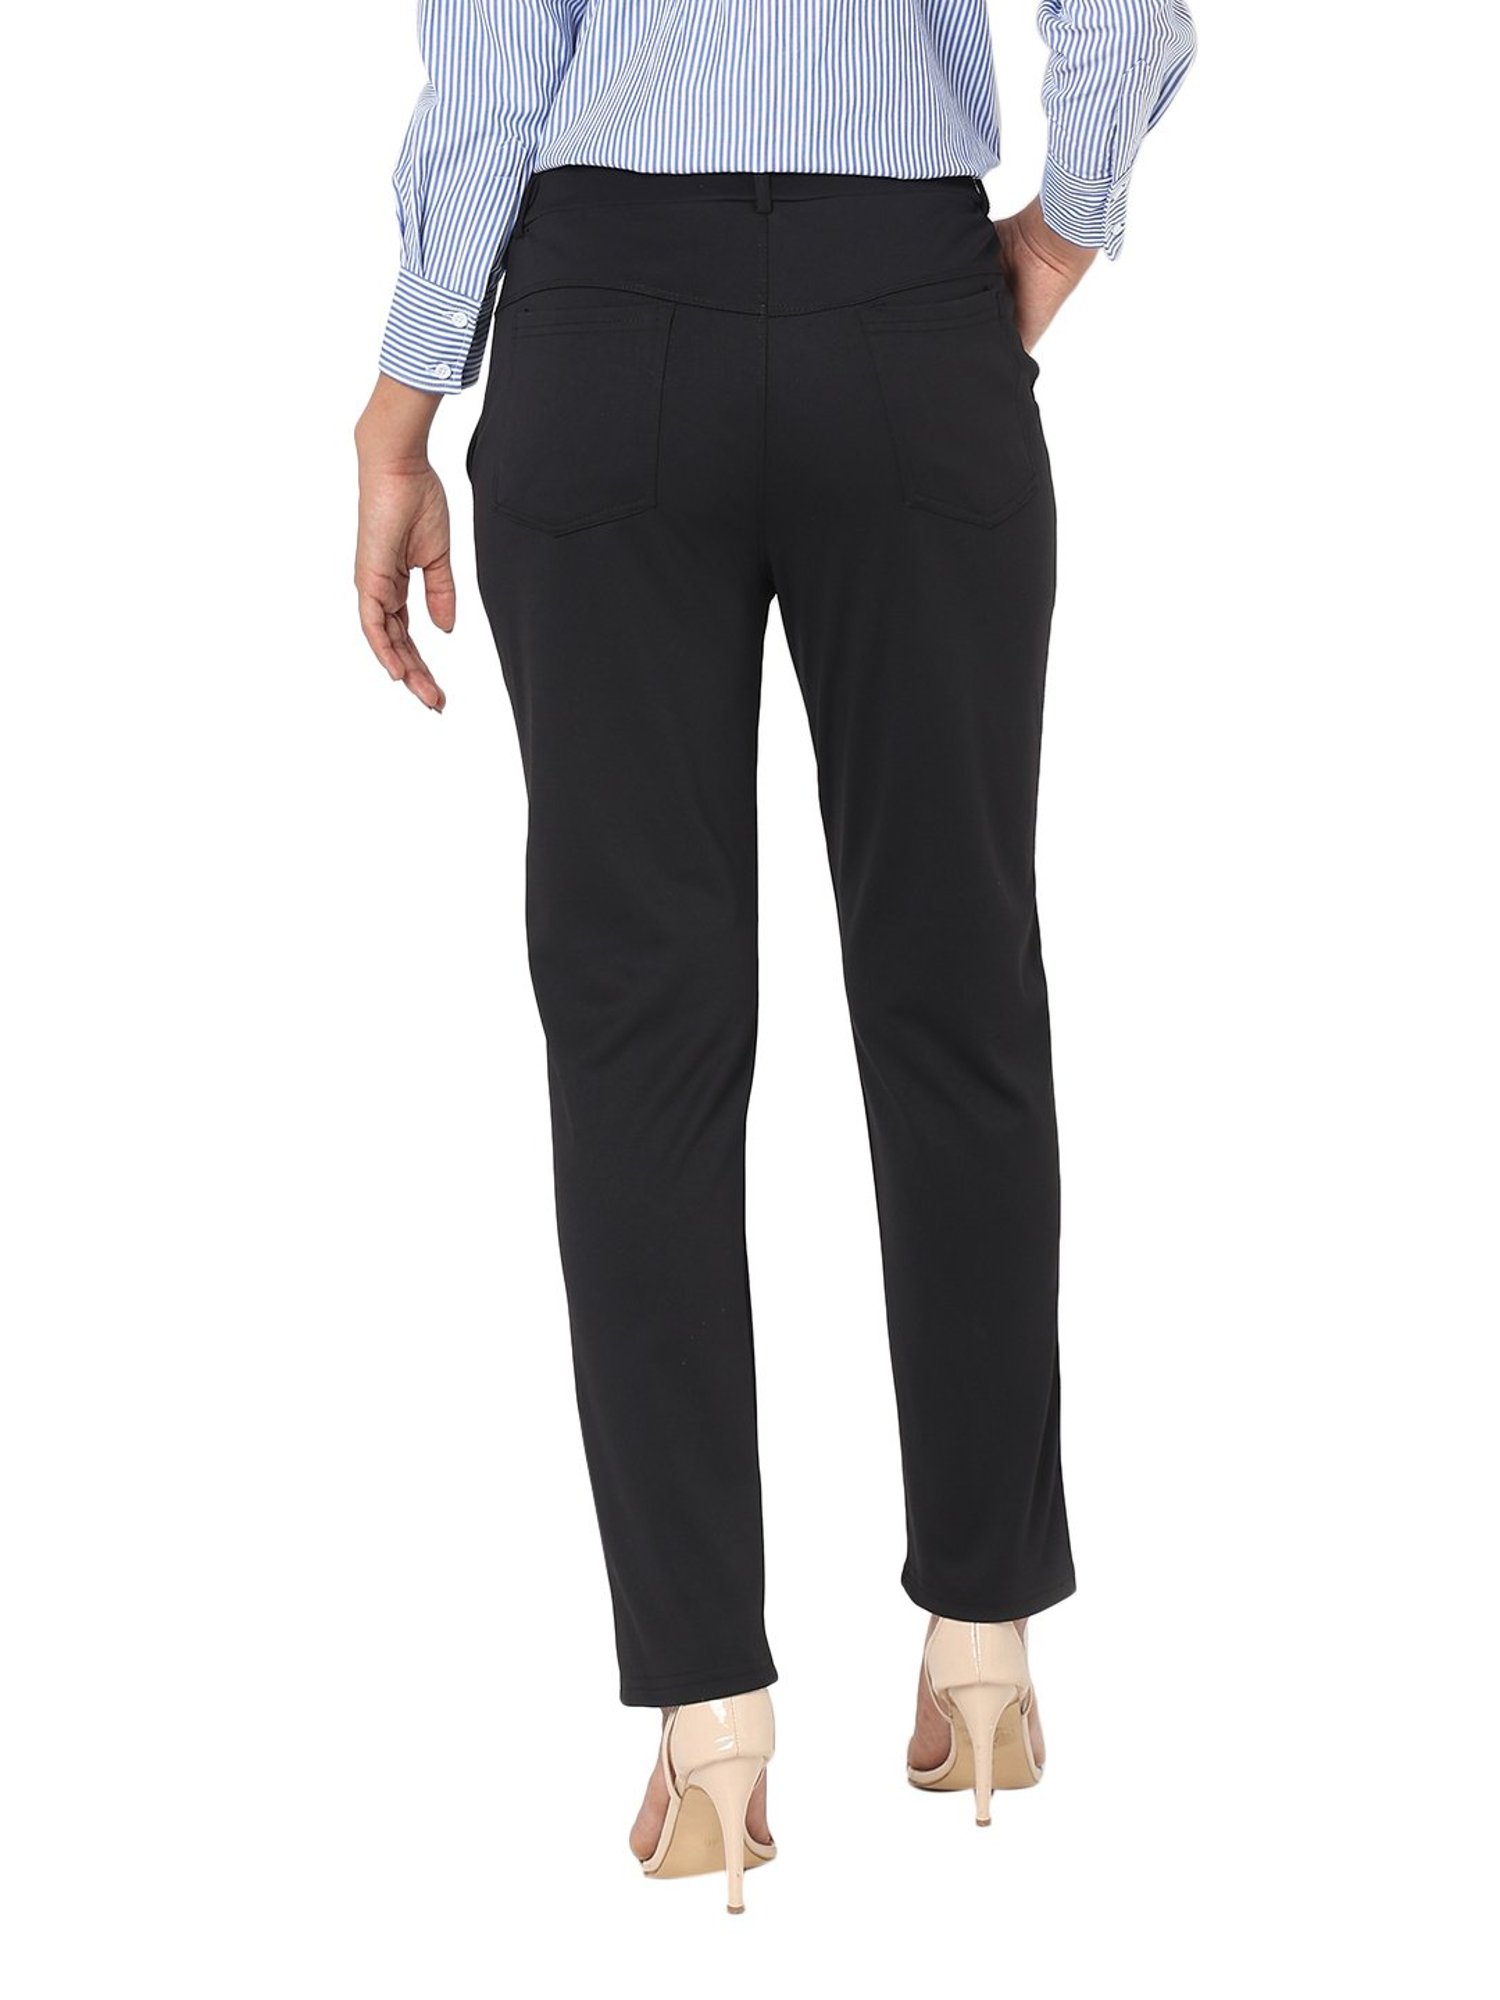 Flared Pants - Black - Ladies | H&M US